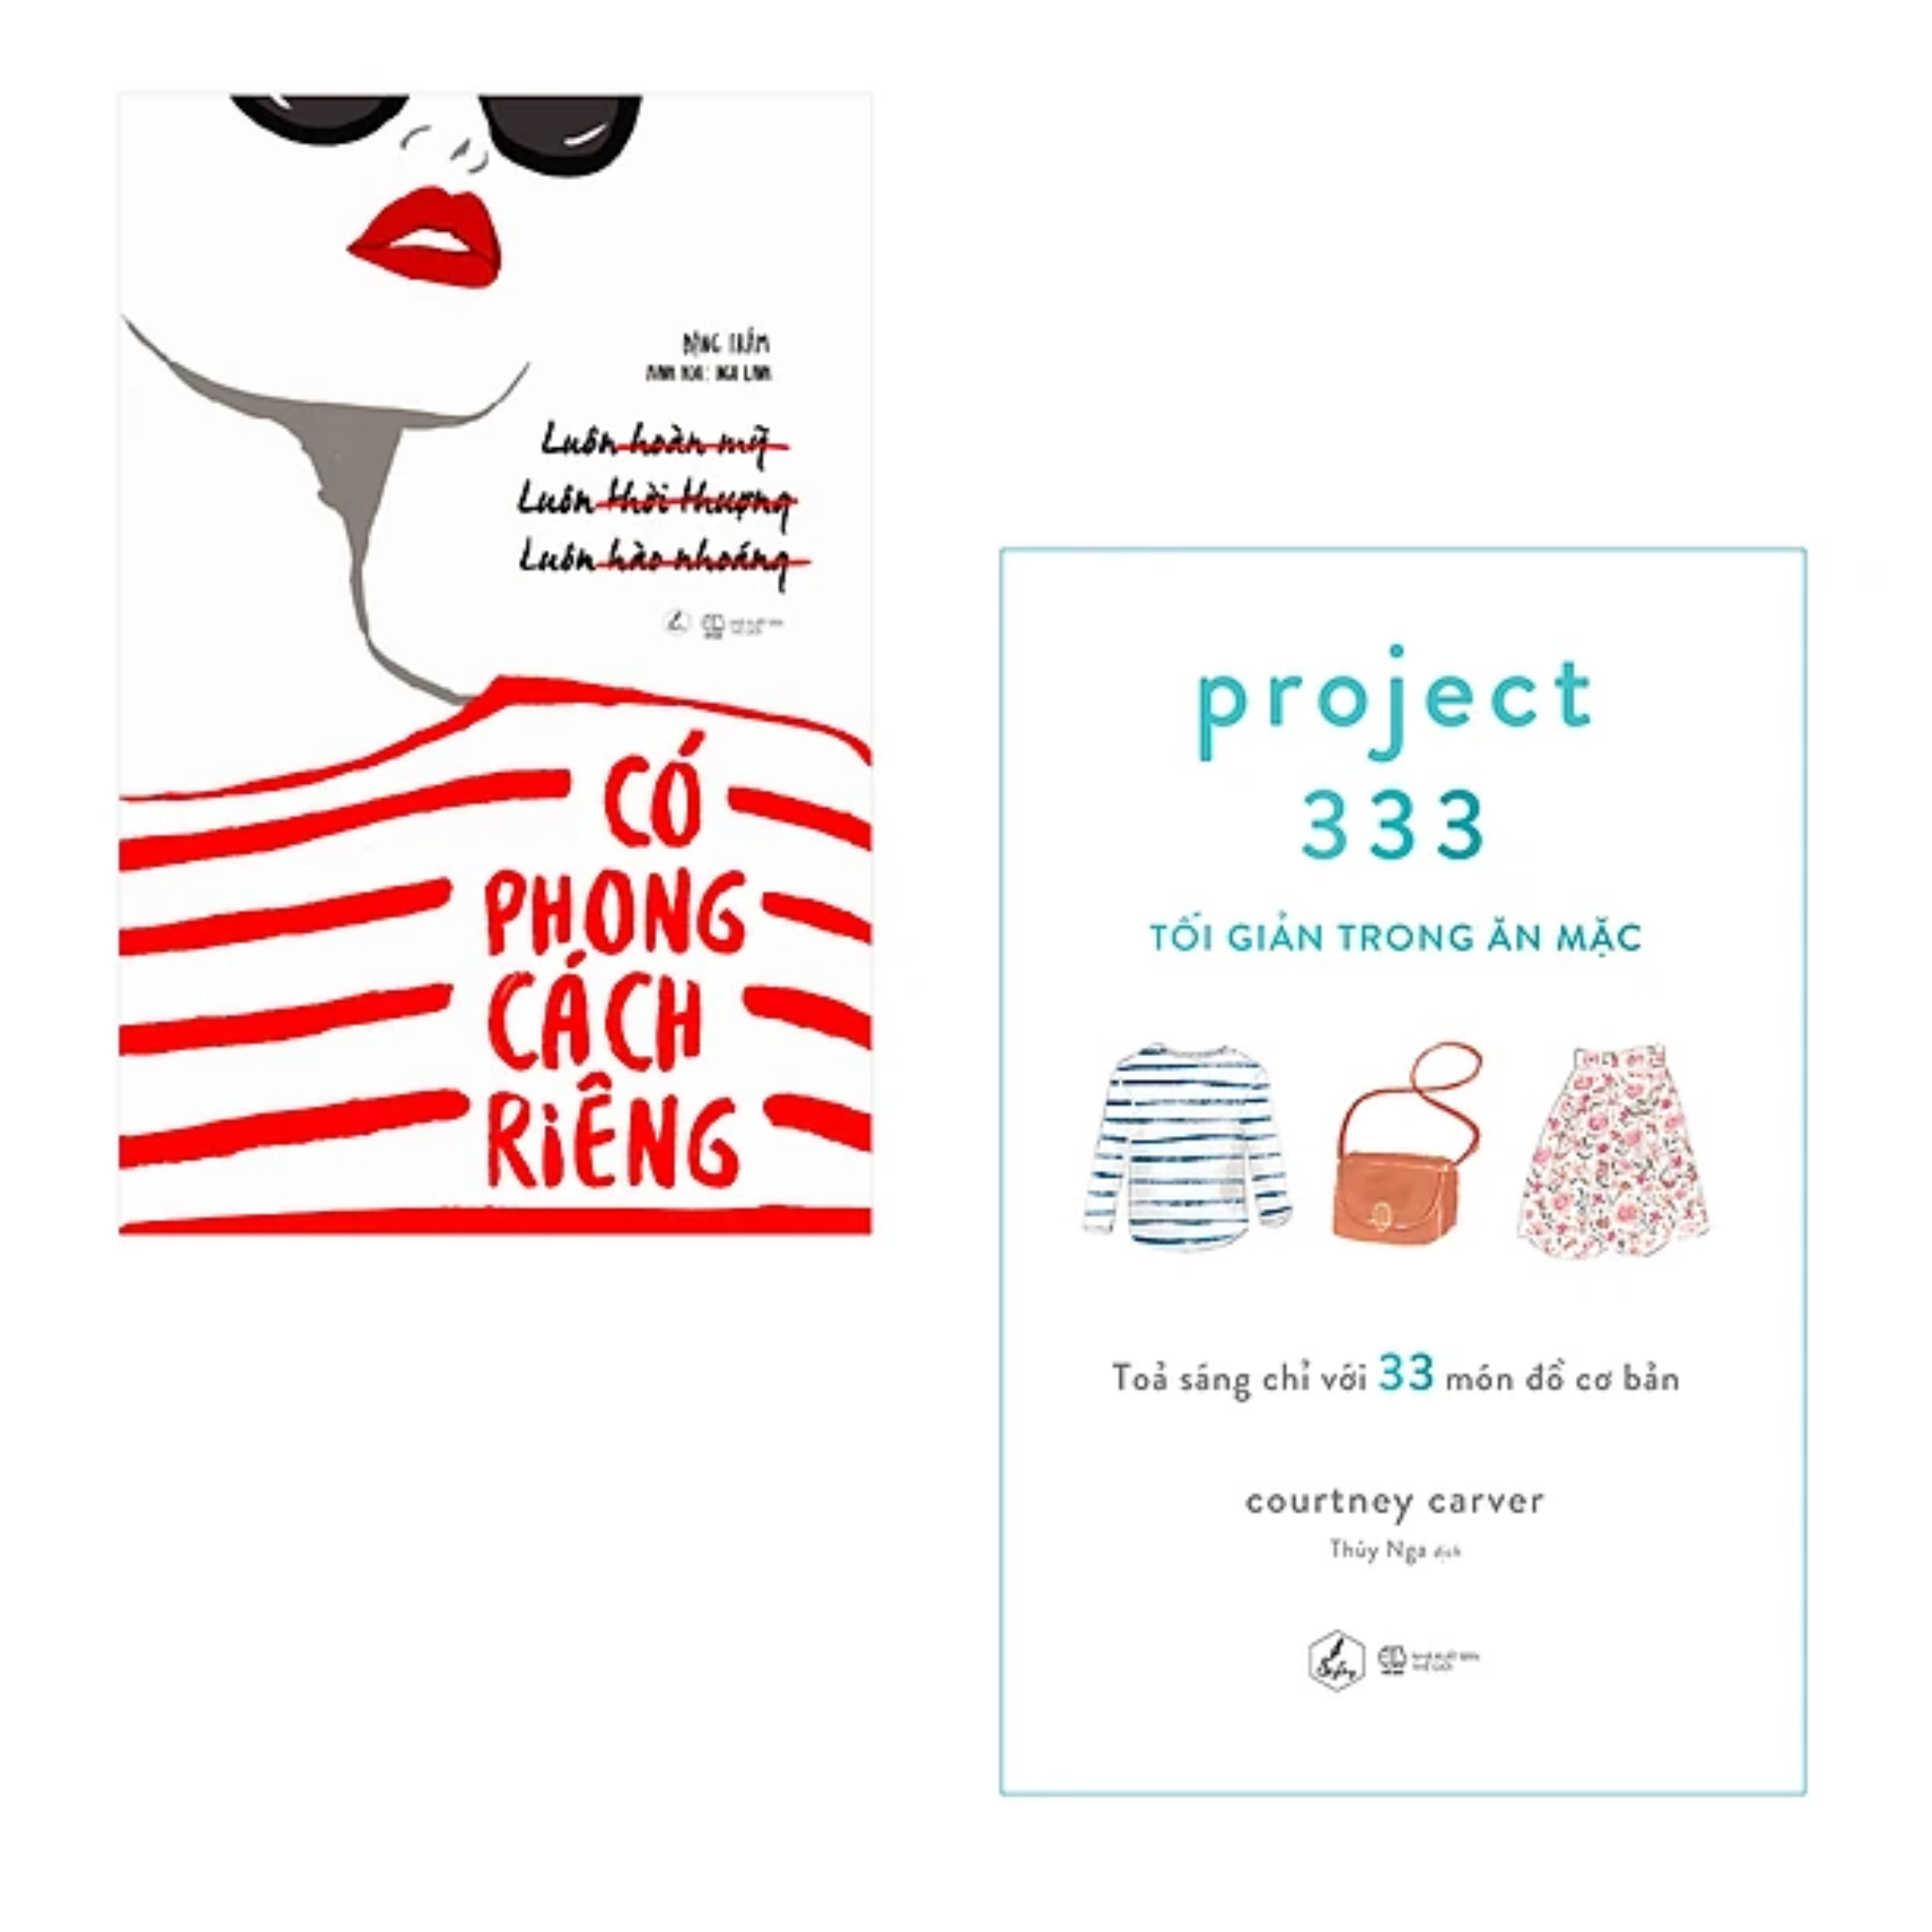 Combo 2 Cuốn Sách Thời Trang: Có  Phong Cách Riêng + Project 333 - Tối Giản Trong Ăn Mặc